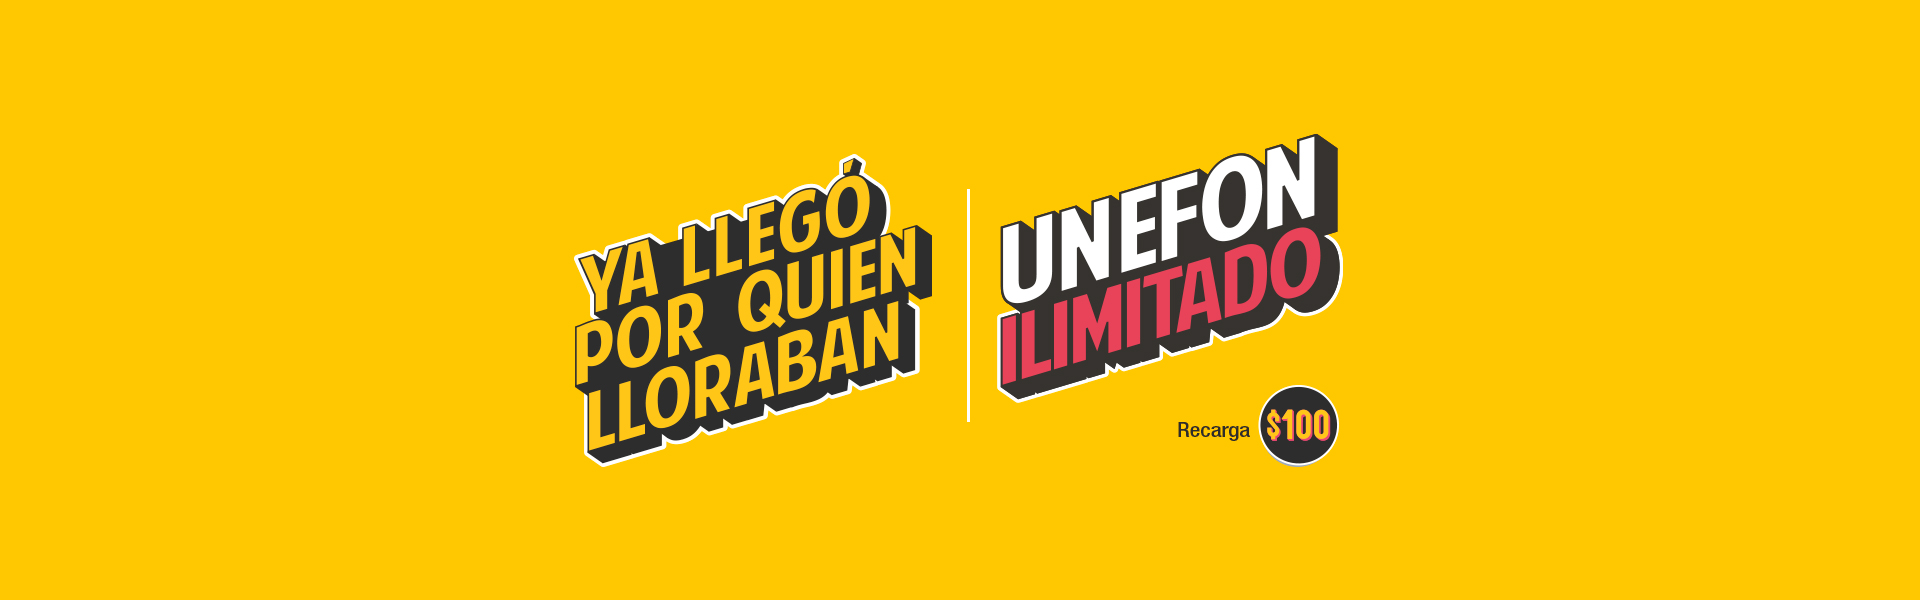 REGRESÓ UNEFON ILIMITADO Banner Desktop